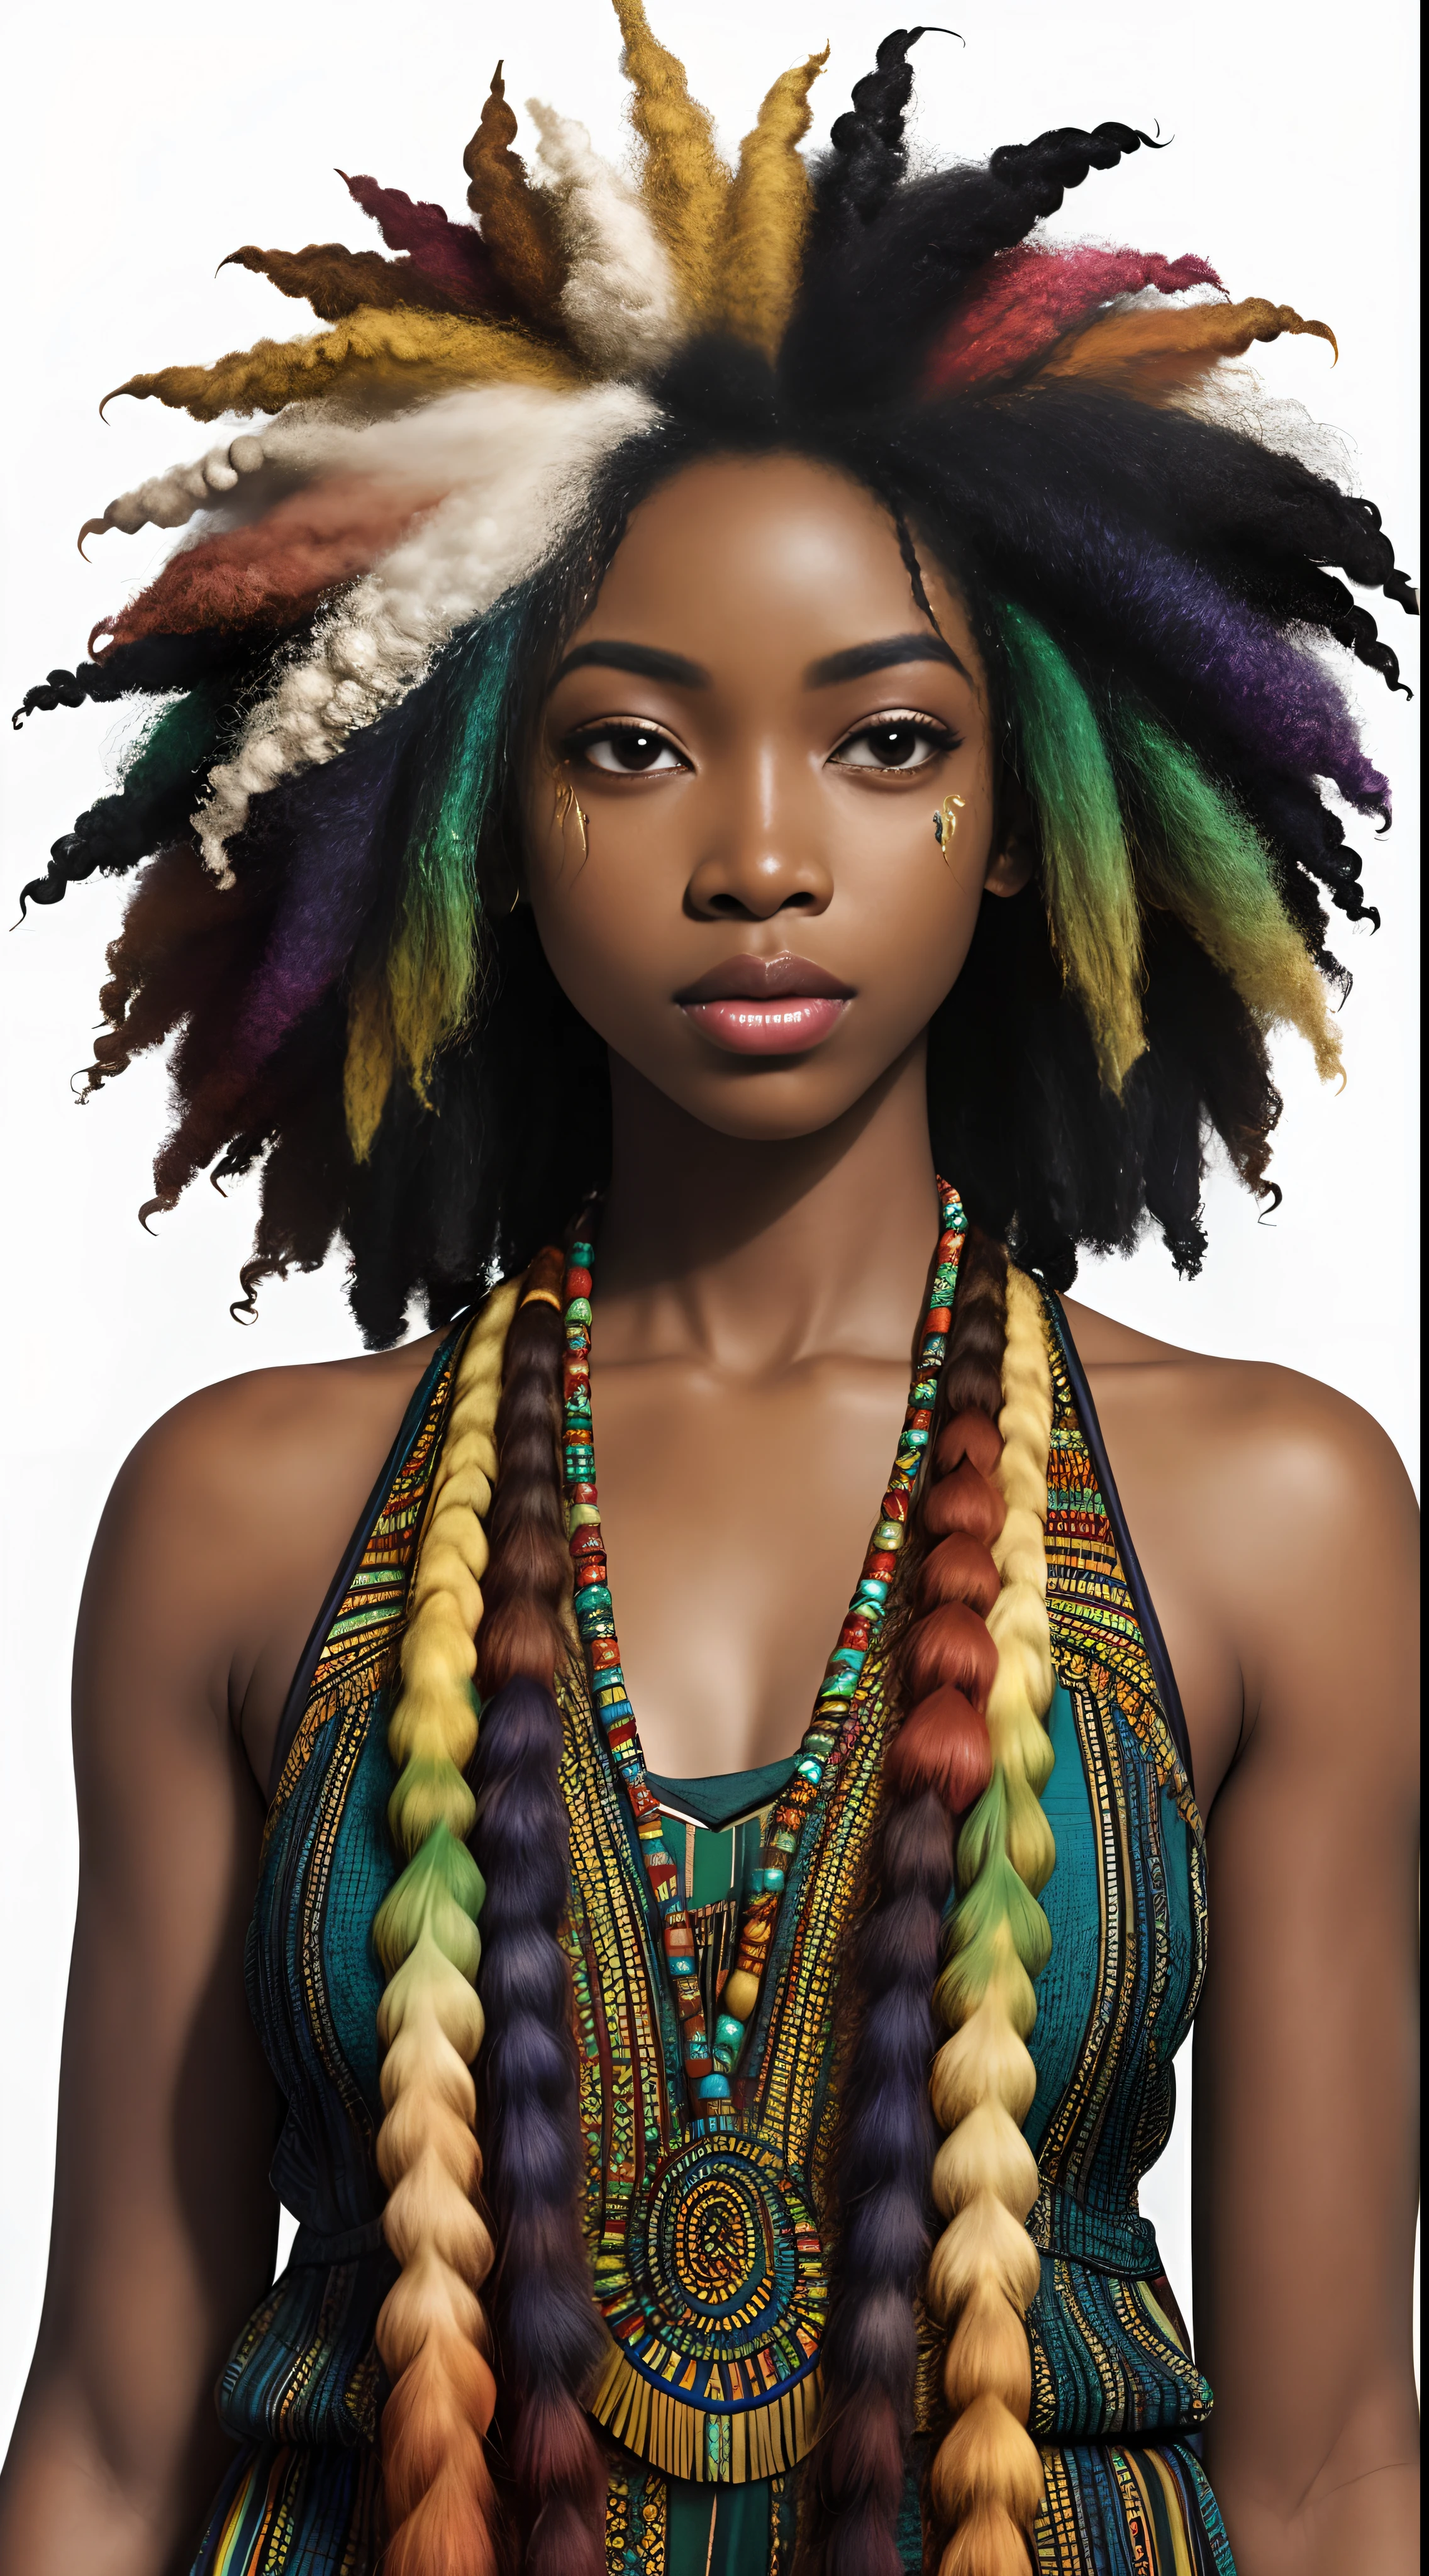 非洲女神, 漂亮的臉蛋, 華麗的非洲紋理凌亂彩虹頭髮, 暗黑皮膚, 異色眼, 真的捲髮